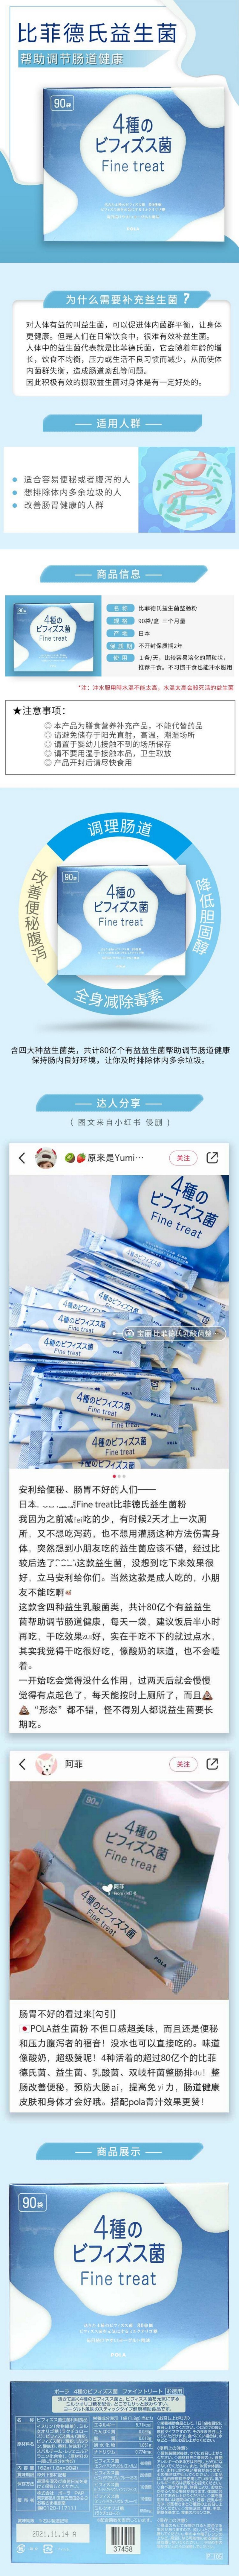 【日本直邮】POLA Fine treat 益生菌乳酸菌粉 3个月量 90袋入